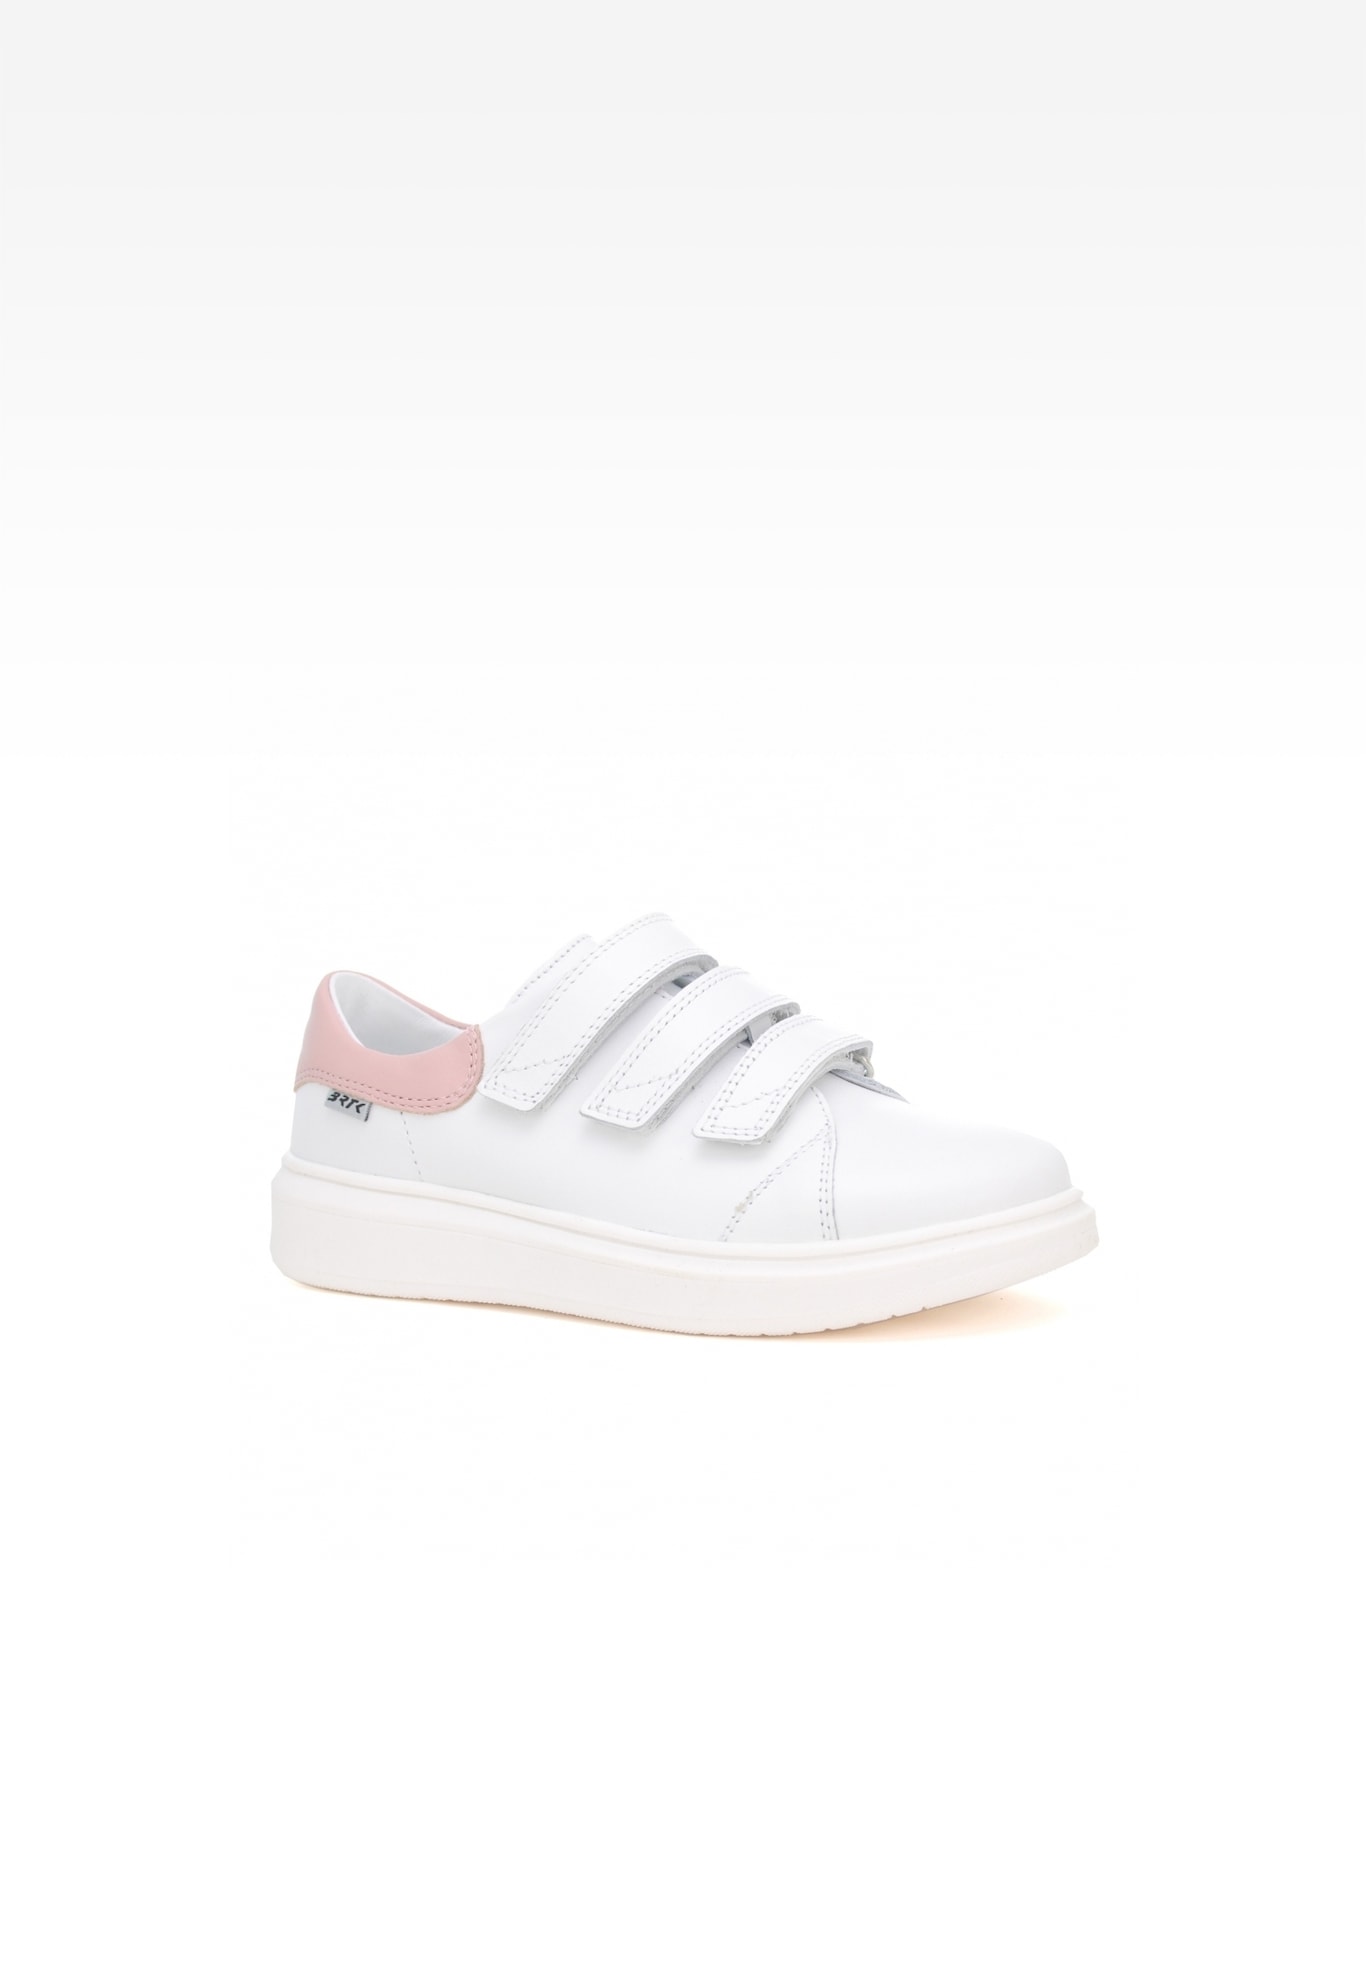 Sneakers BARTEK W-78220/B87, dla dziewcząt, biały